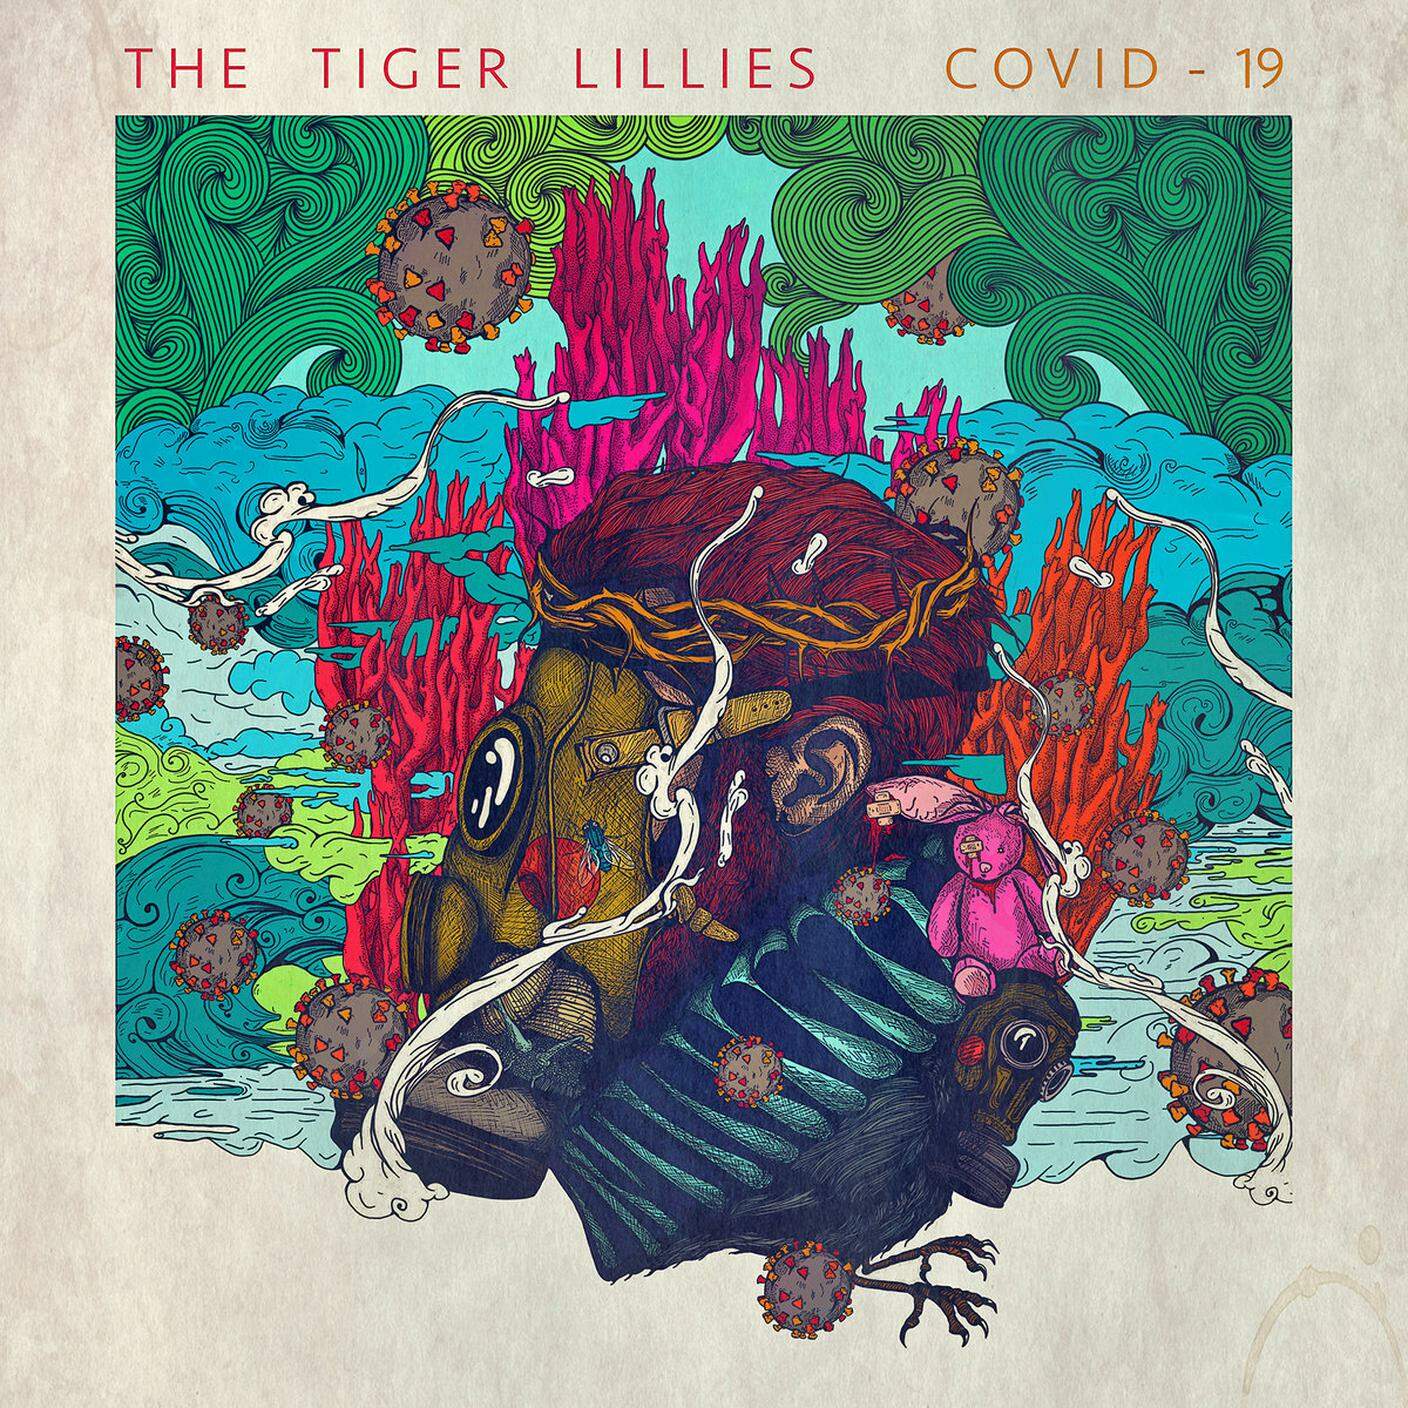 The Tiger Lillies, "Covid 19" (dettaglio copertina)